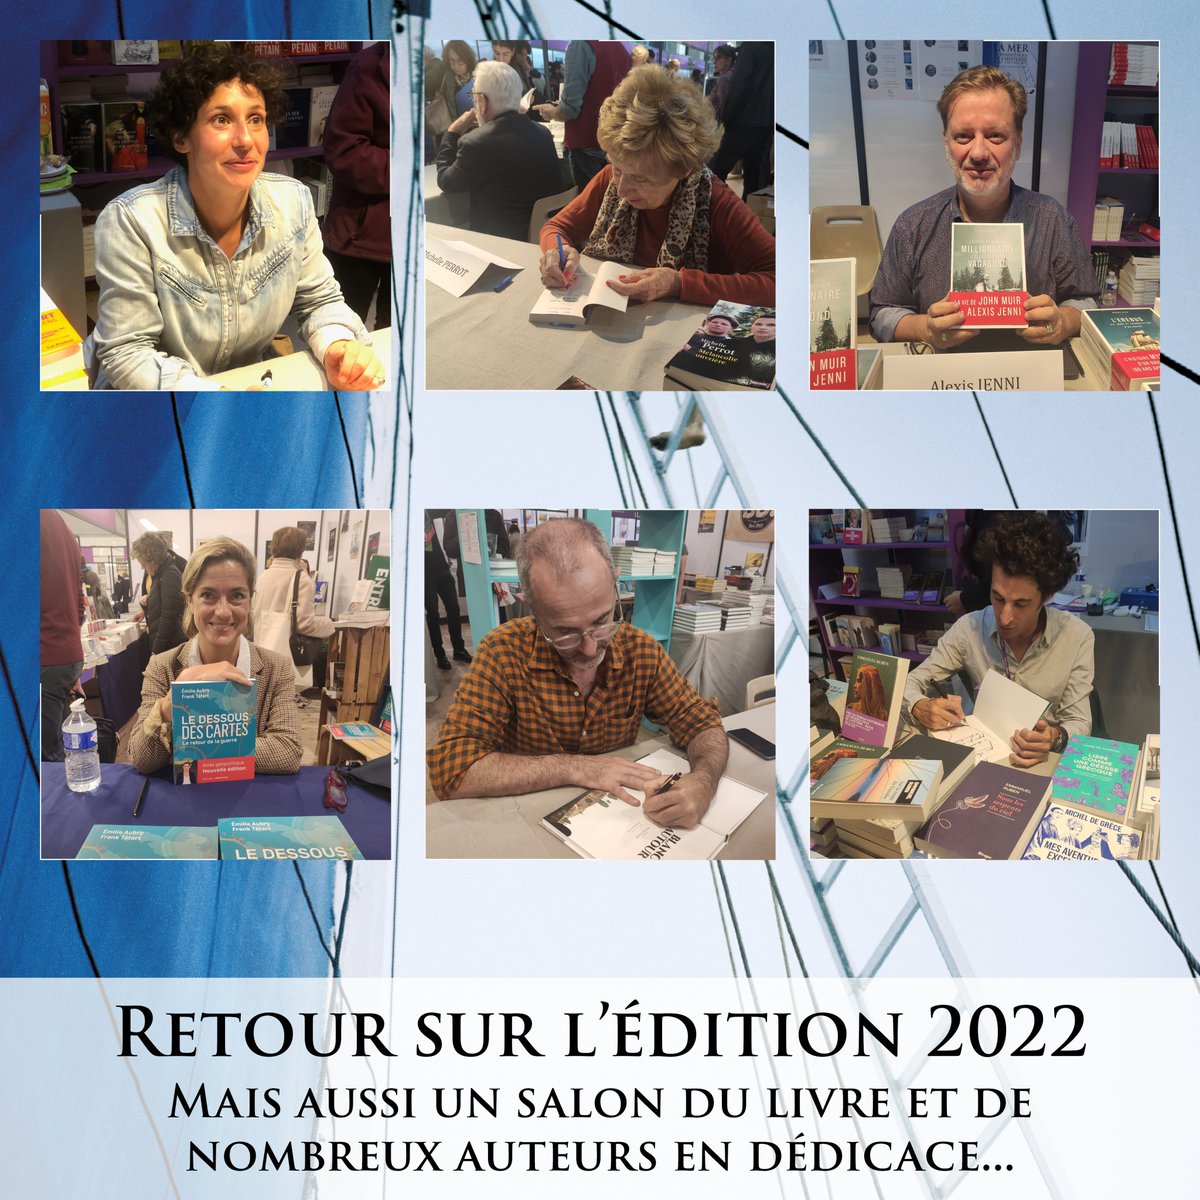 Retour sur le festival et son immense salon du livre, avec plus de 400 auteurs en dédicace. #RVH2022 #festival #blois